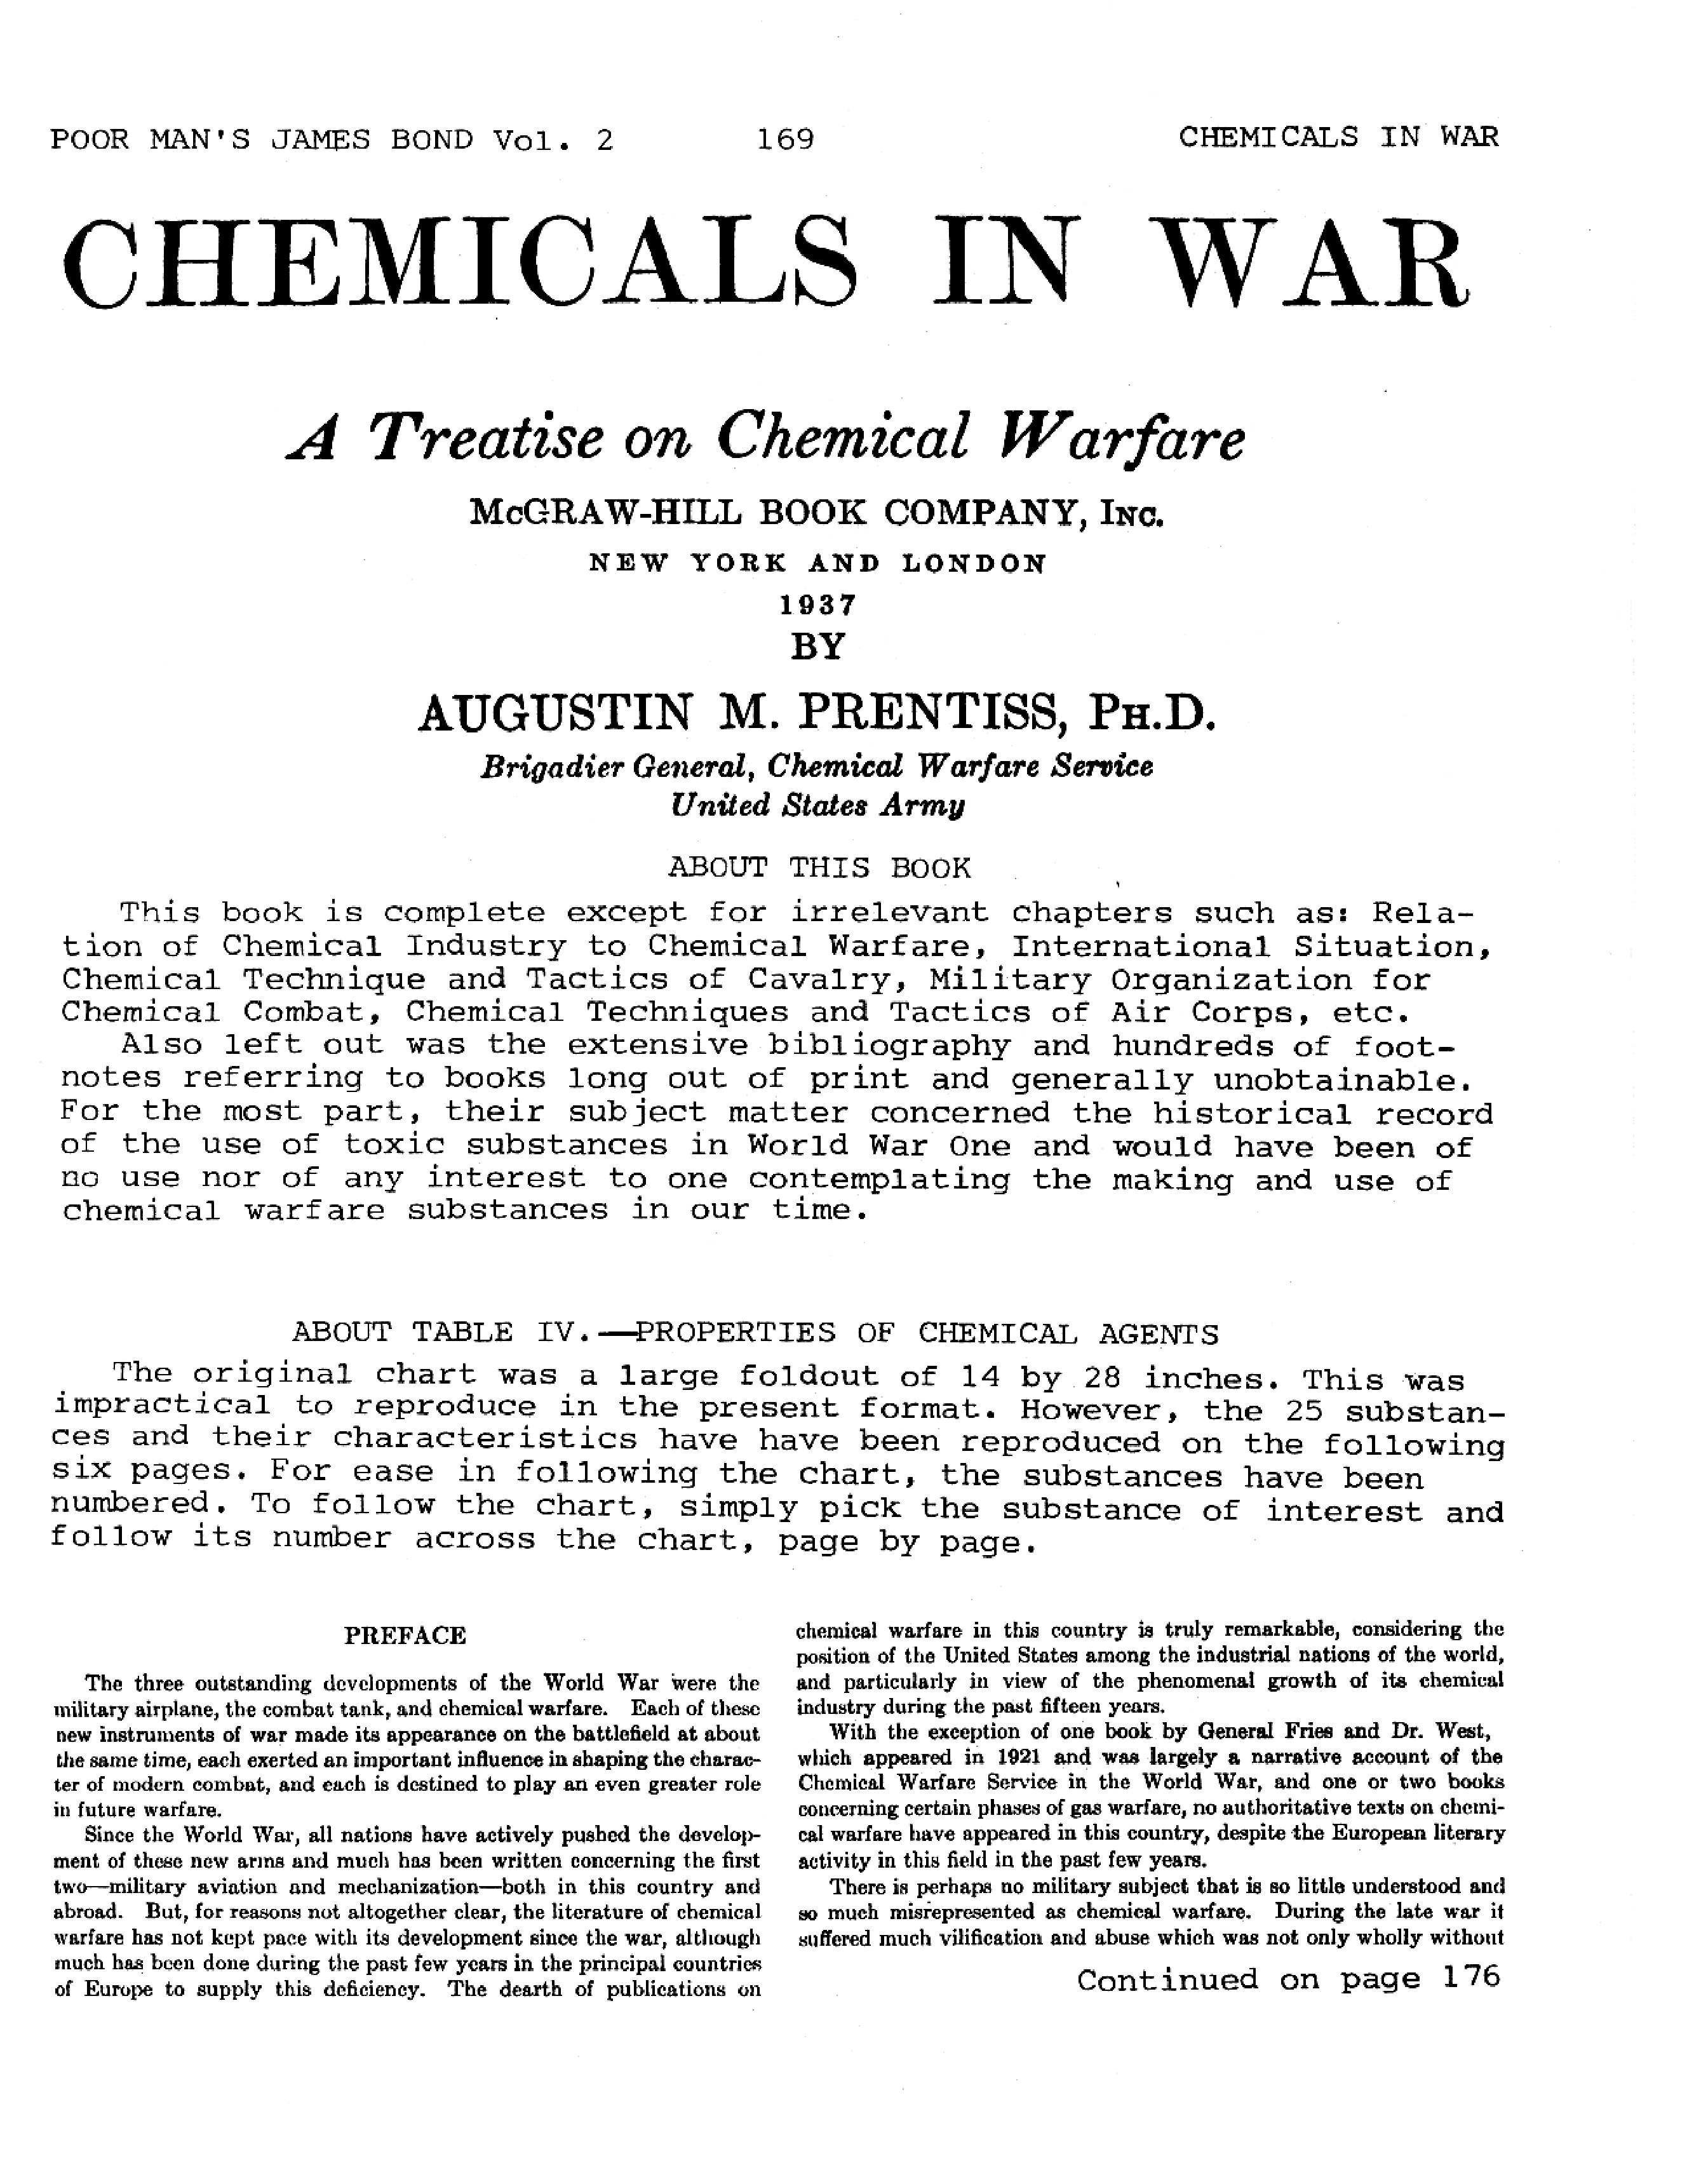 Chemicals in War - Austin Prentiss